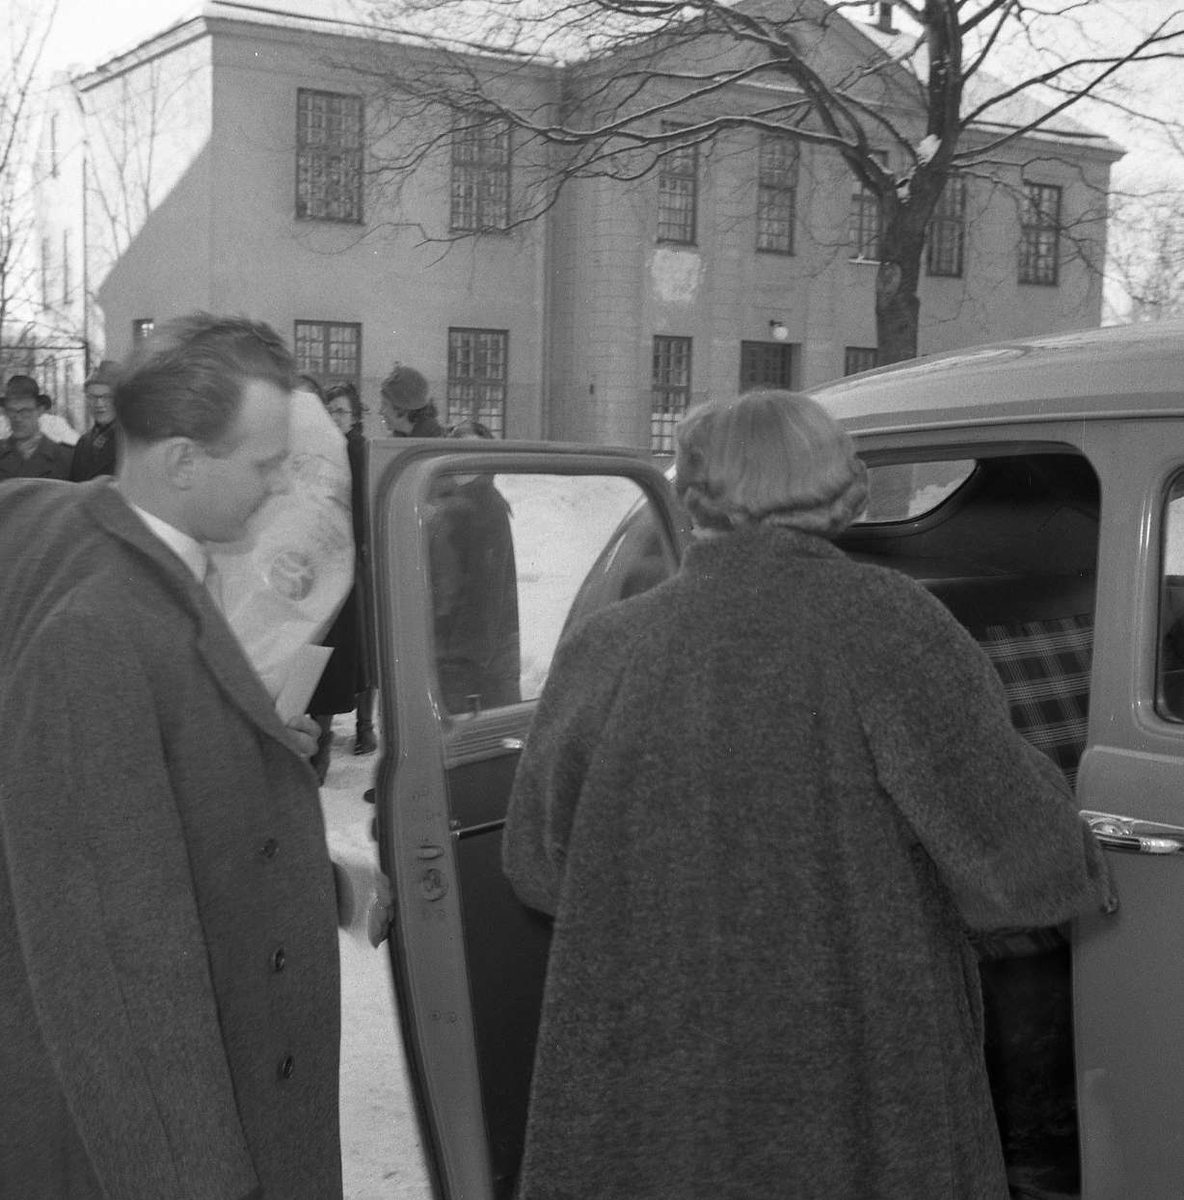 Brudparet Wiklund på väg in i bilen, Uppsala Ålderdoms- och sjukhem, Svartbäcken, Uppsala 1954